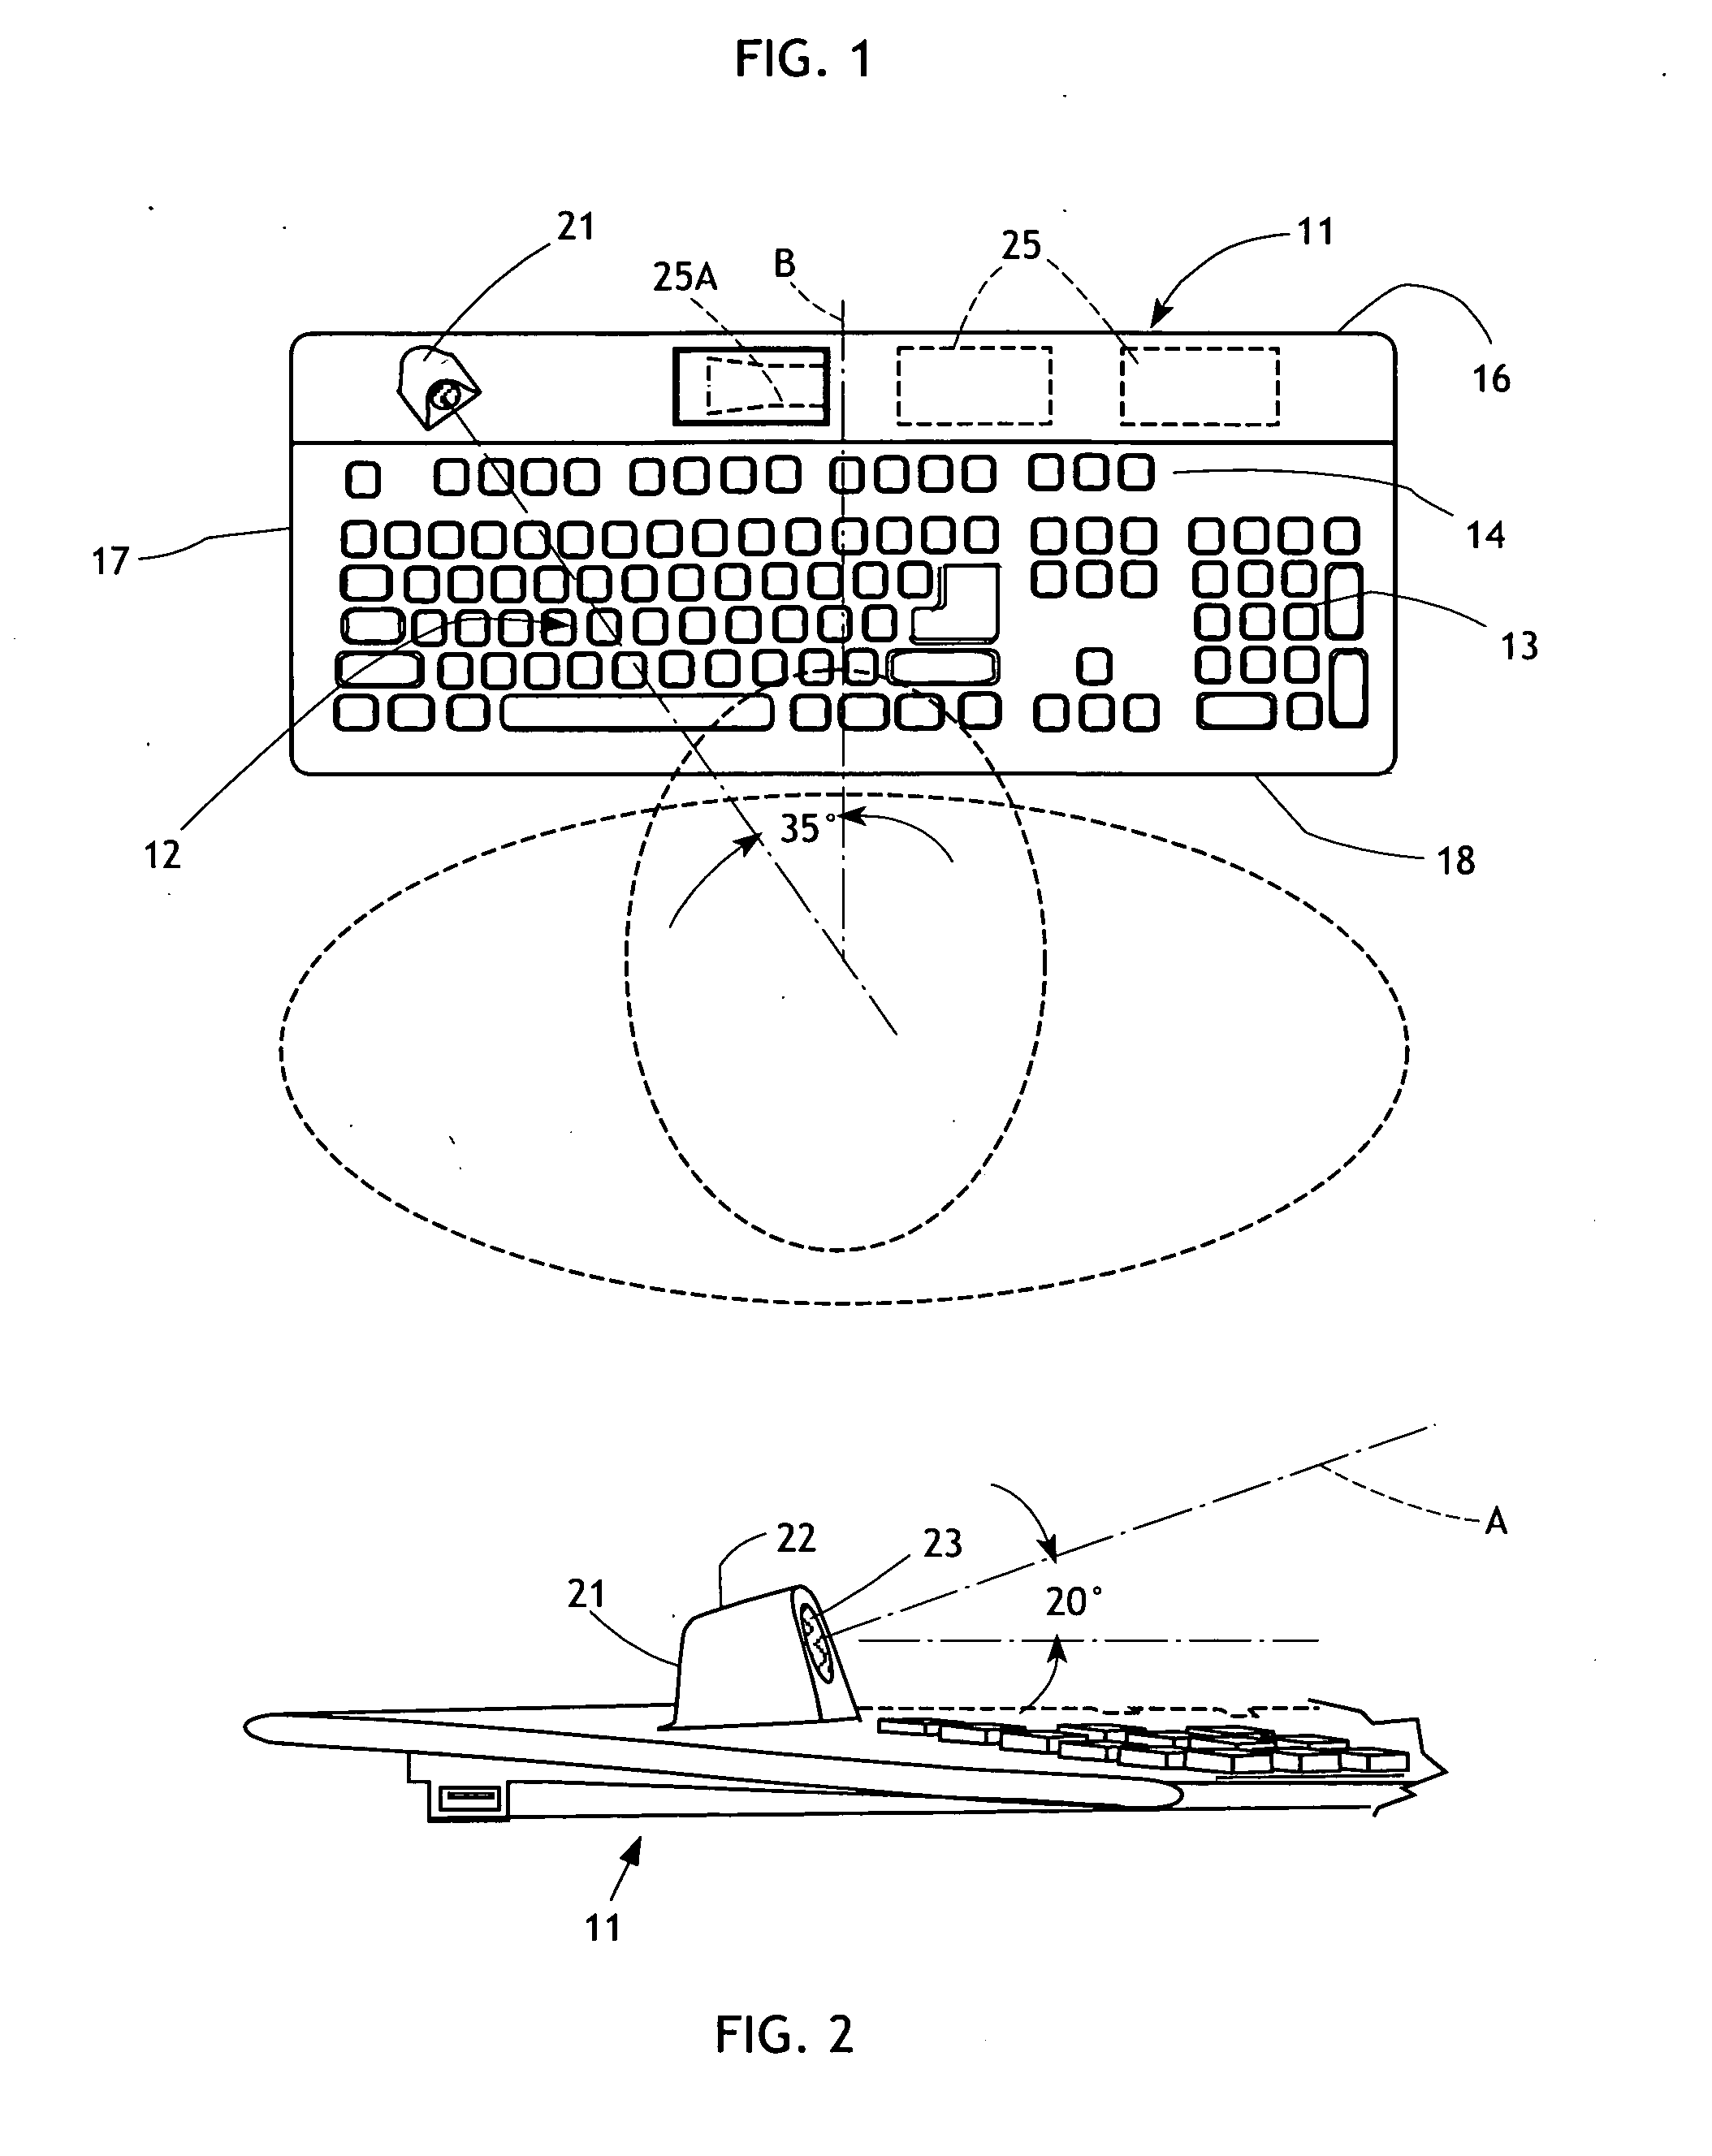 Computer keyboard with ultrasonic user proximity sensor